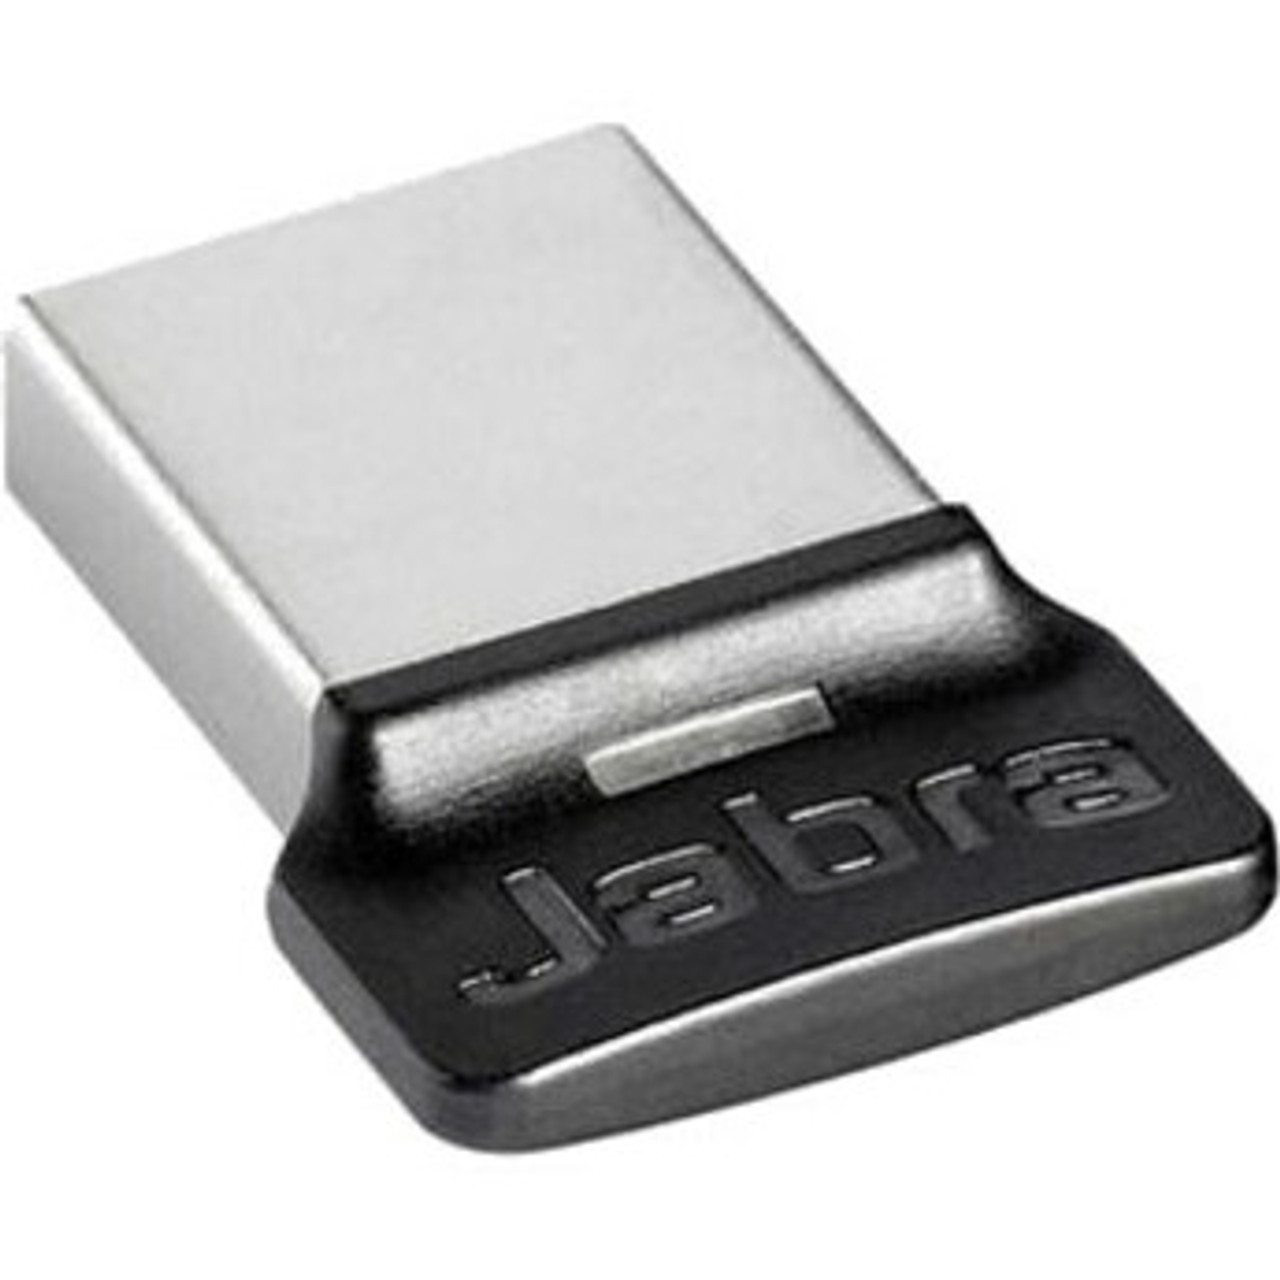 Jabra LINK 360 Bluetooth 3.0 Bluetooth Adapter 14208-01